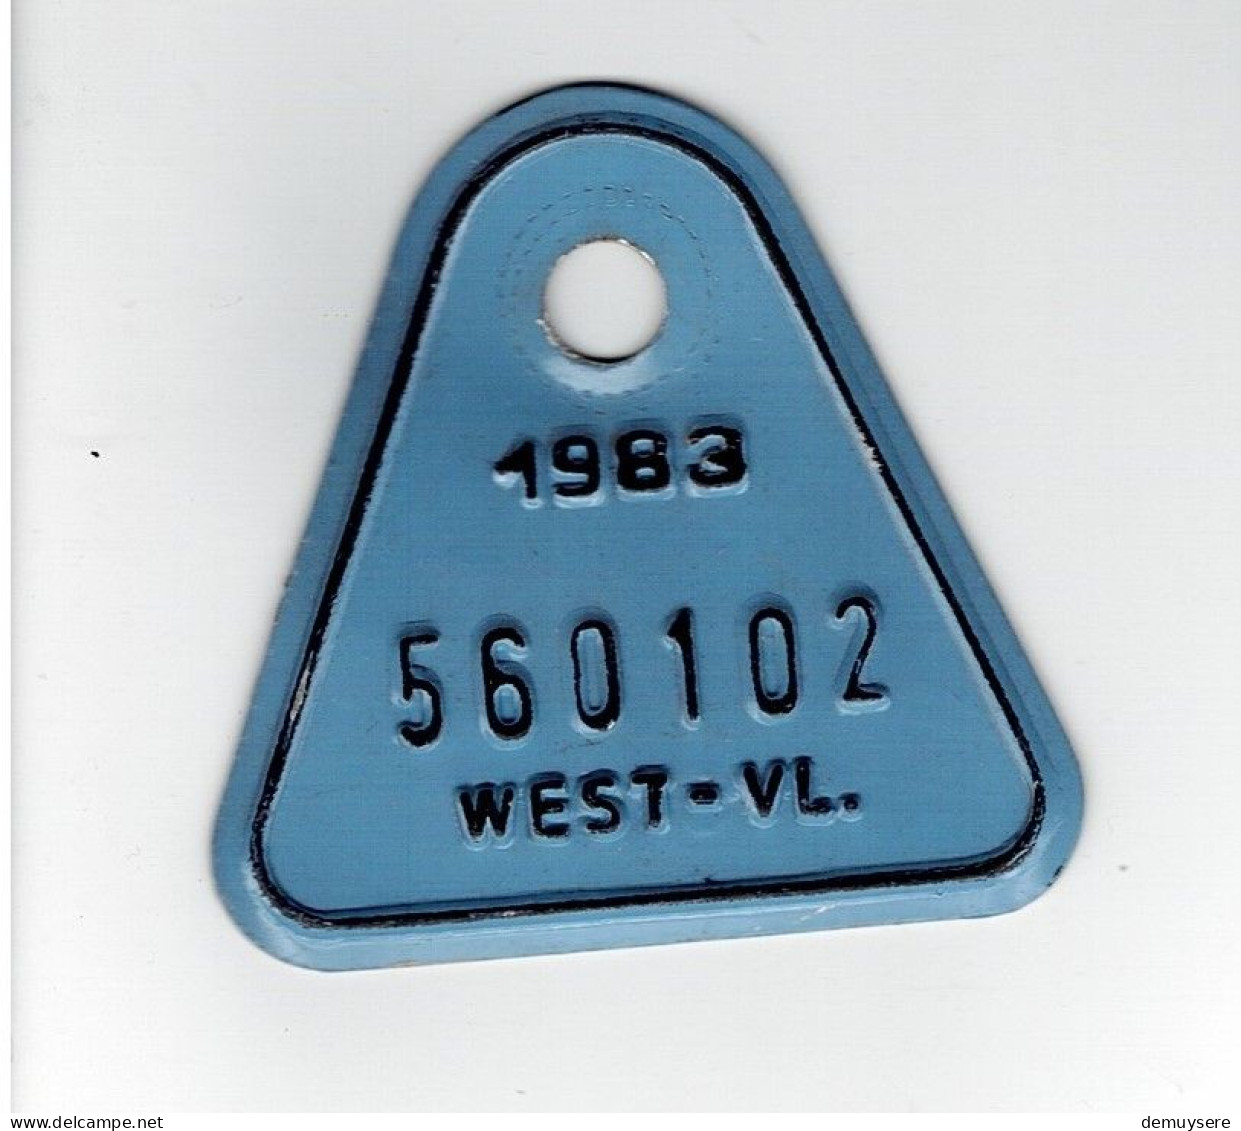 LADE D - FIETSPLAAT - 1983  -  WEST-VL - 560102 - Placas De Matriculación